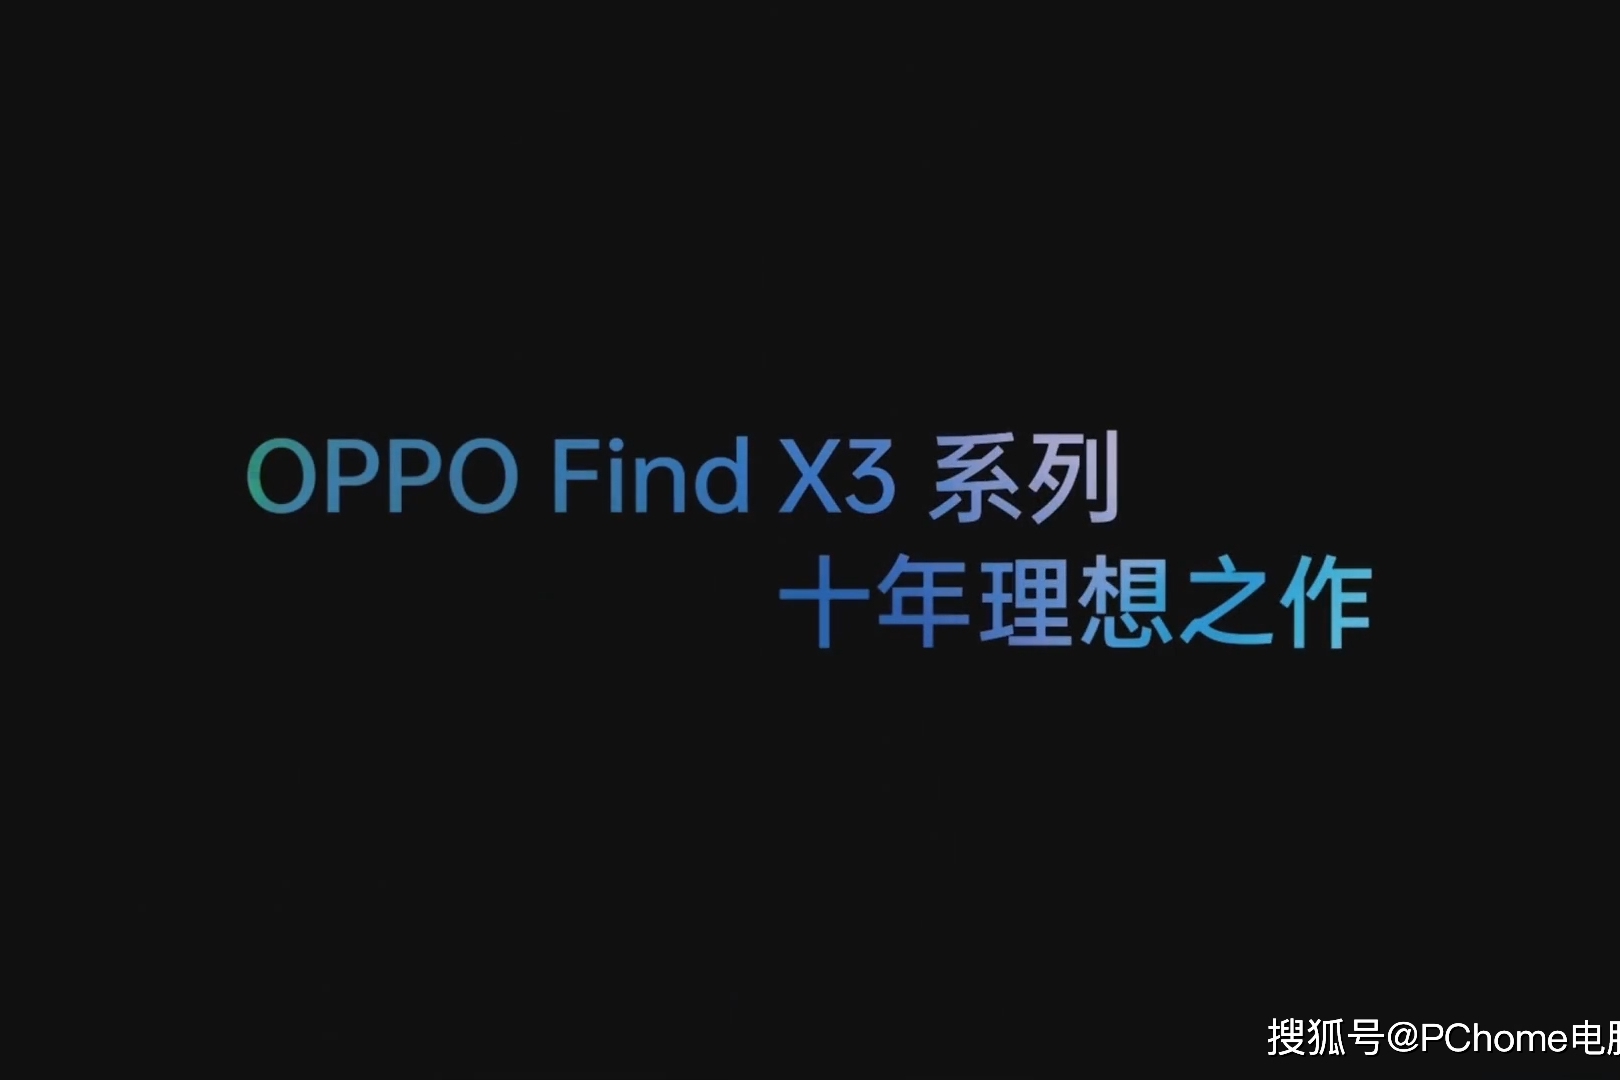 秒看发布会:oppo find x3系列新品发布会快速回顾